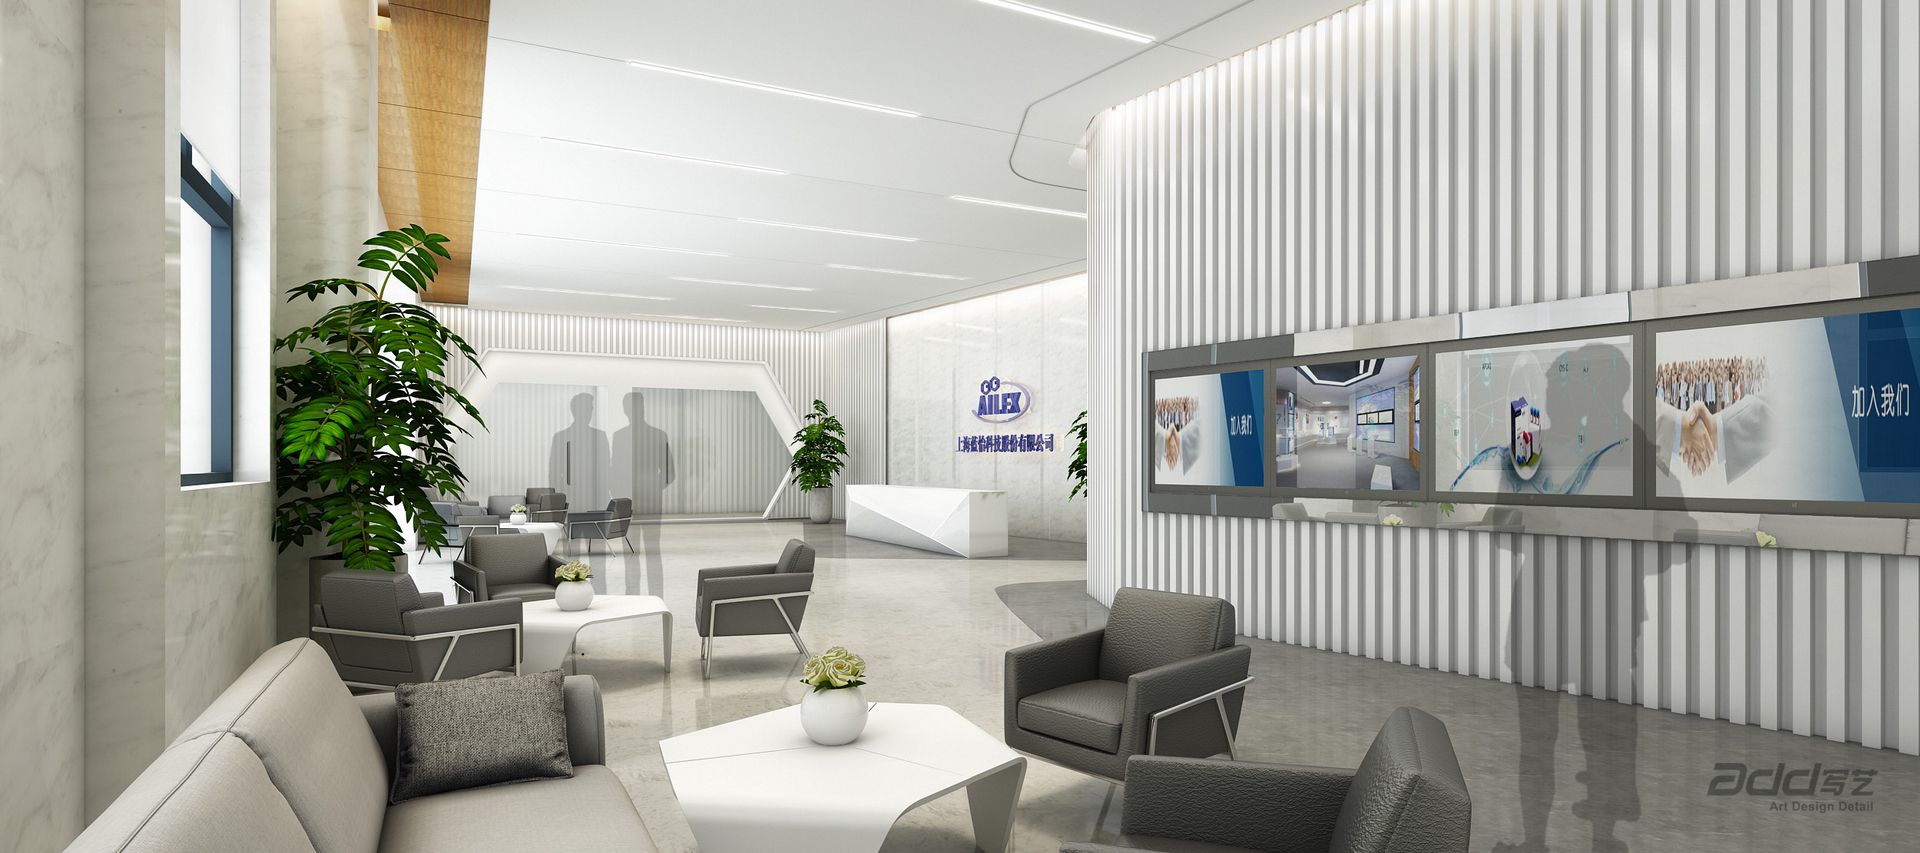 藍怡科技辦公空間設計 前廳座談區-pc